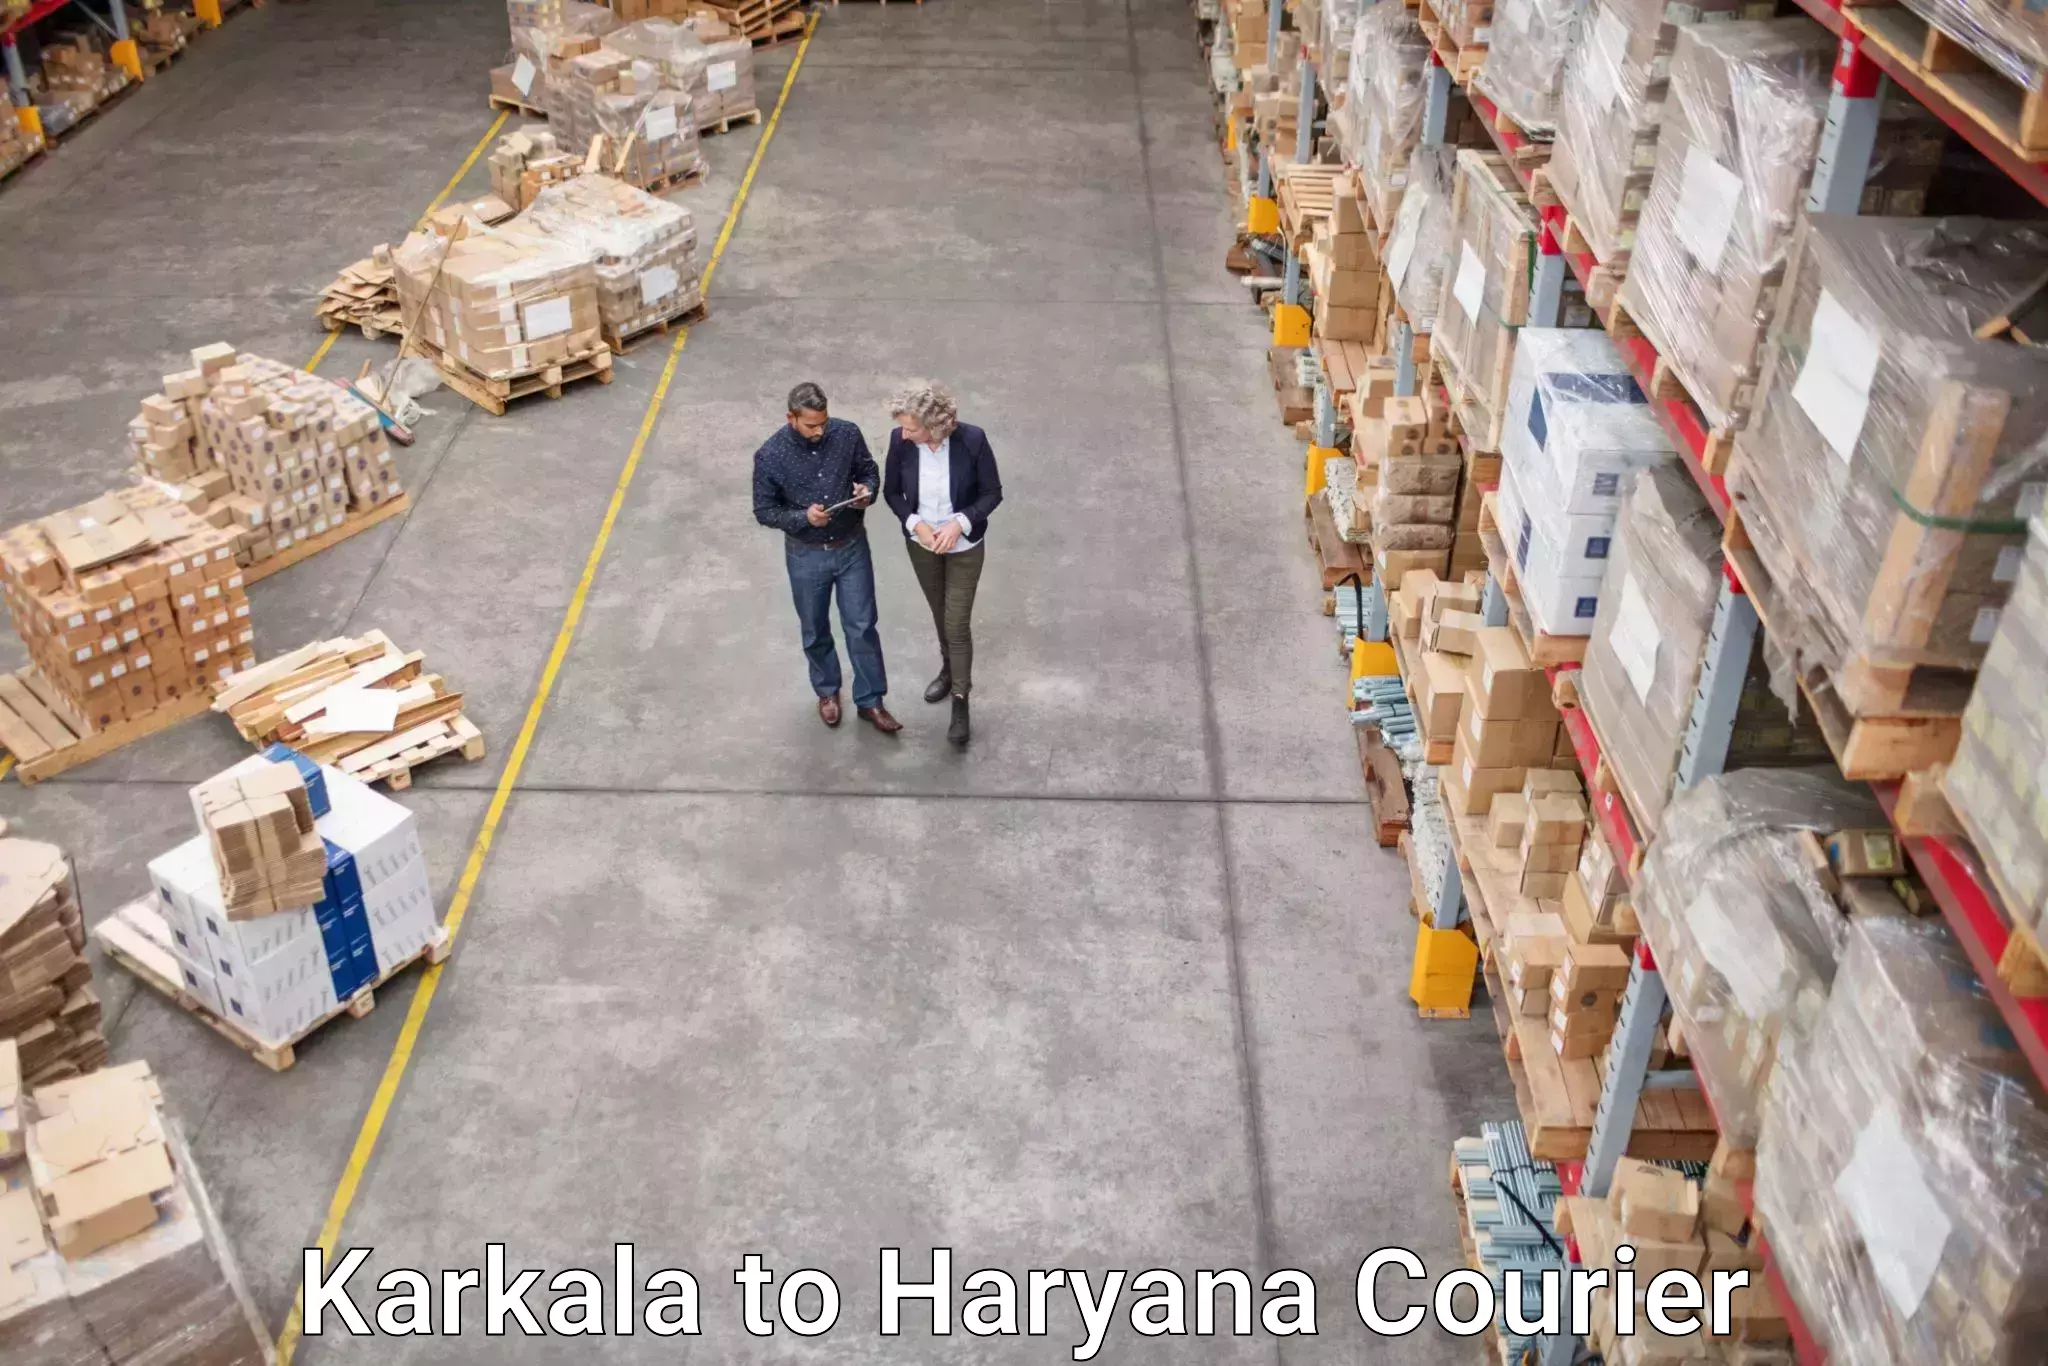 Seamless shipping experience Karkala to Narwana